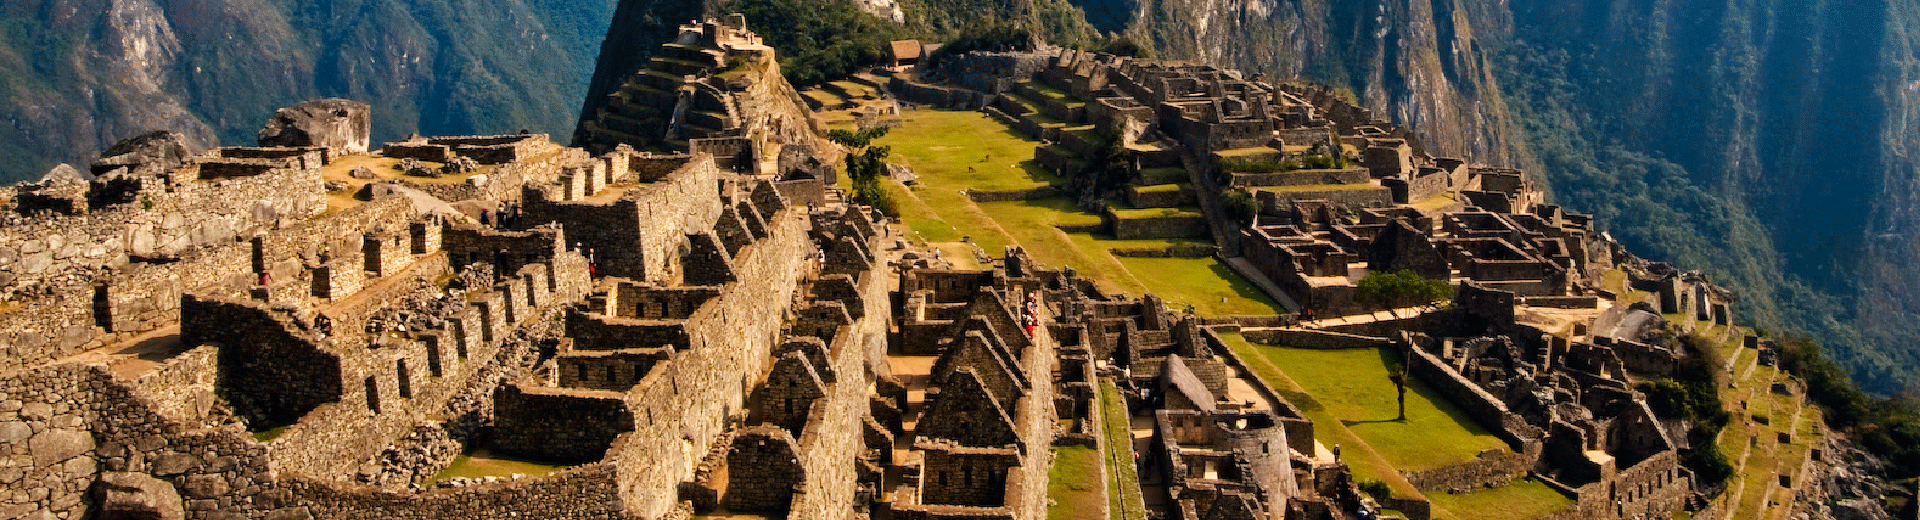 Conheça os pontos turísticos do Peru Descubra Turismo